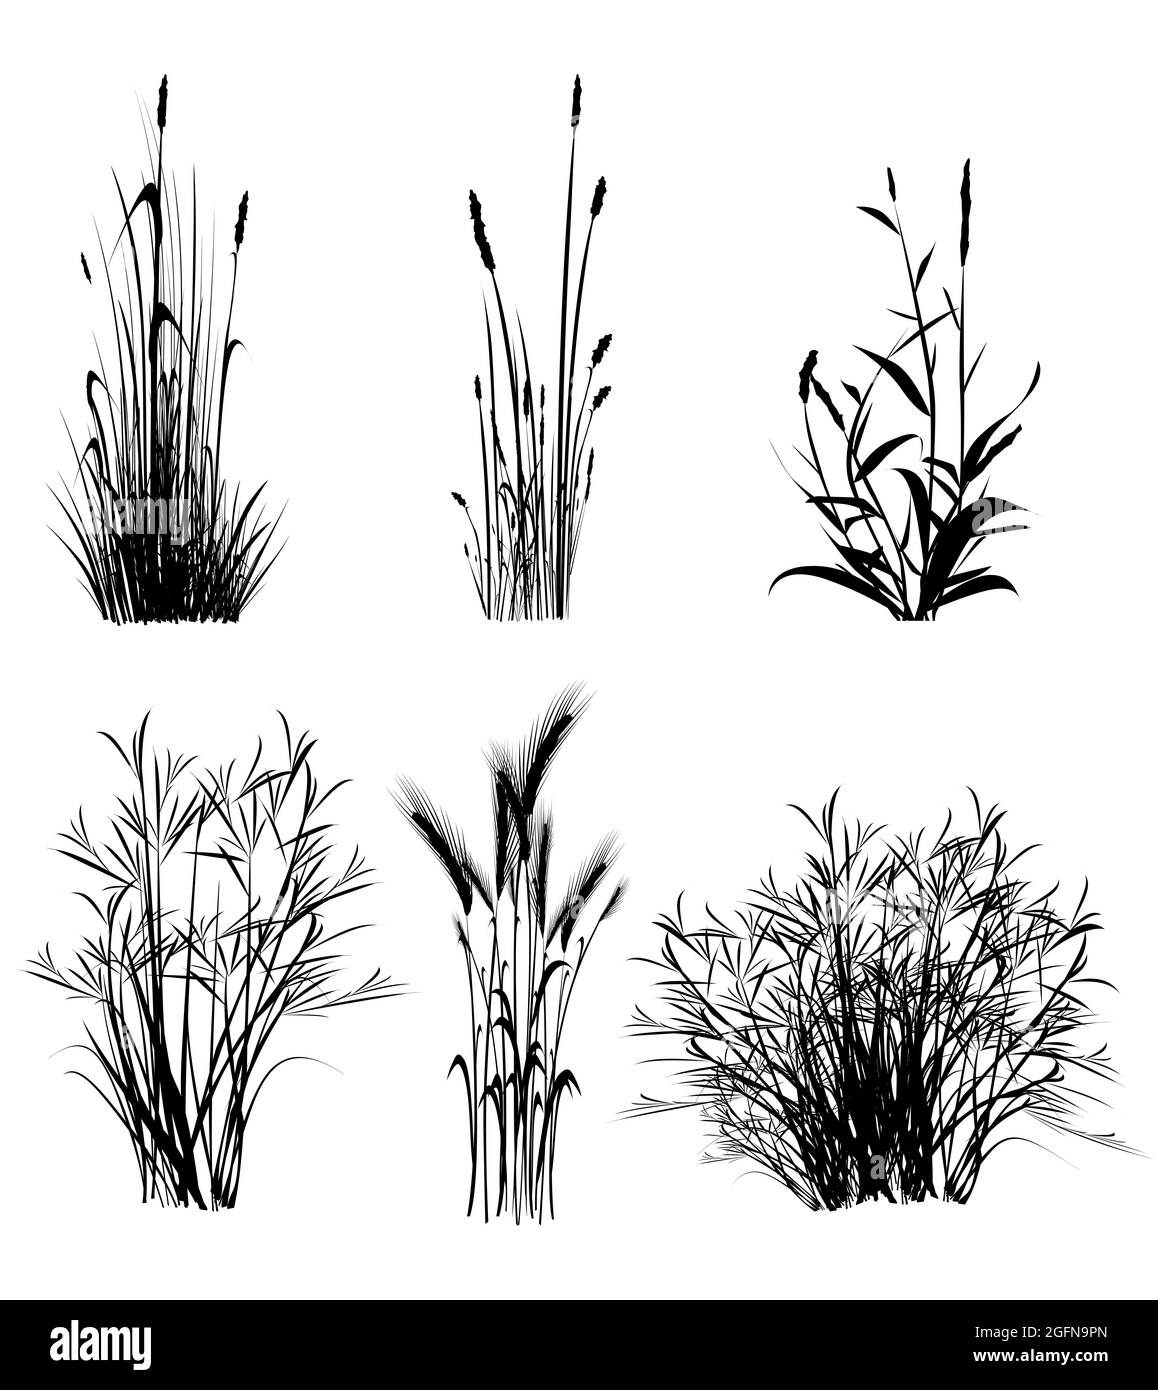 Illustration d'une silhouette isolée de formes d'herbe de couleur noire sur fond blanc. Banque D'Images